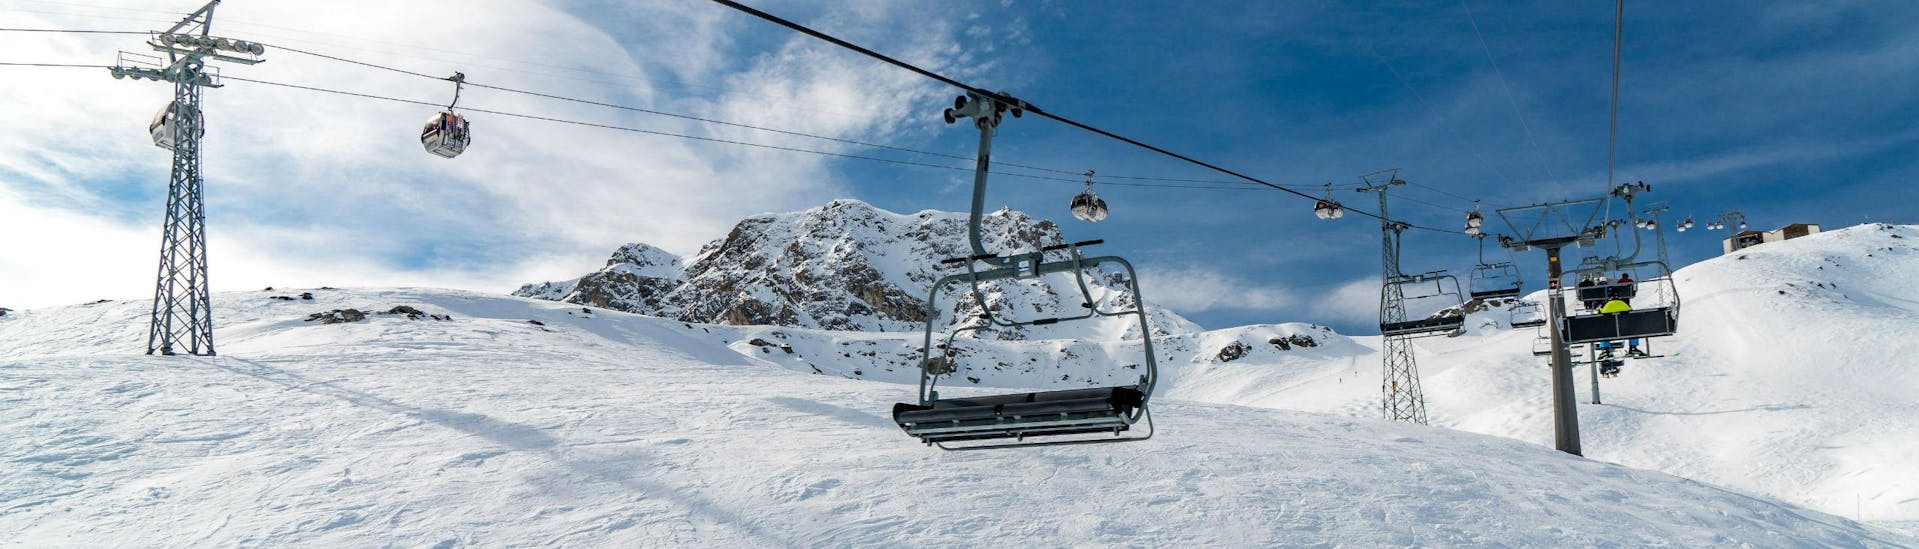 Vue sur un télésiège et une télécabine dans la station de ski suisse d'Arosa, où les écoles de ski locales proposent des cours de ski pour tous ceux qui veulent apprendre à skier.